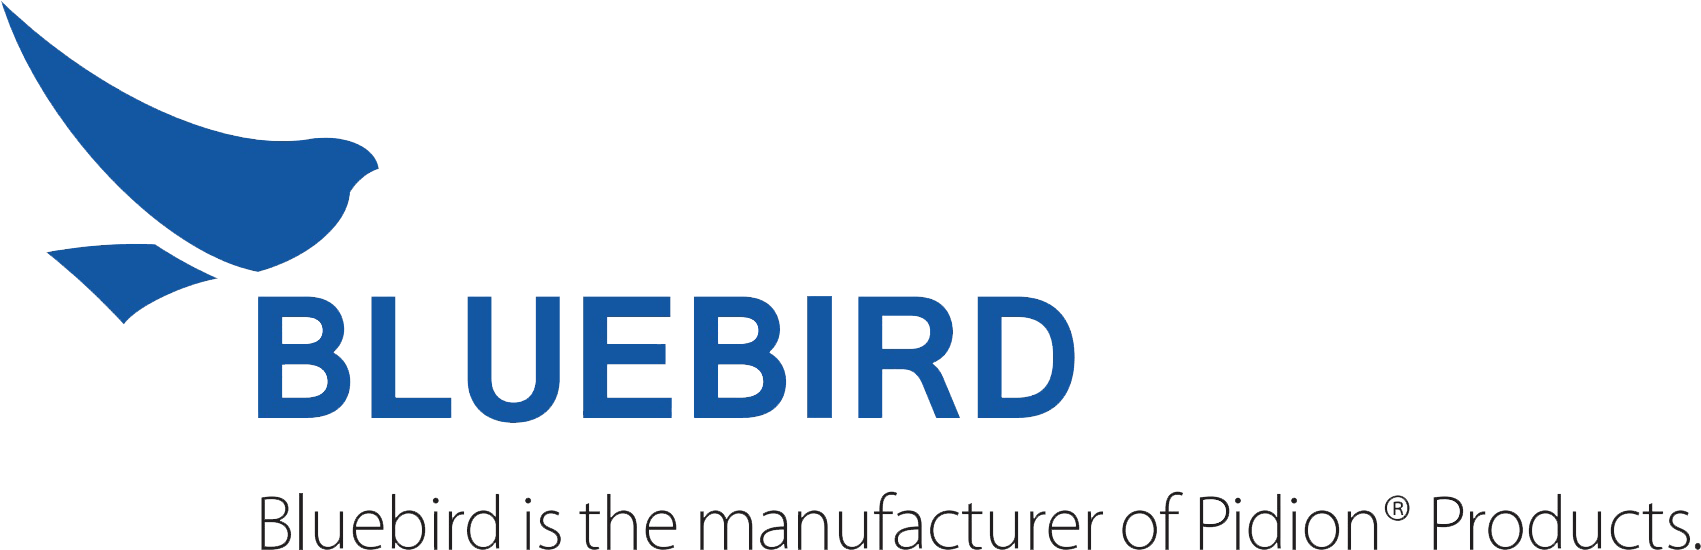 Bluebird Logo - Bluebird logo | Million Tech